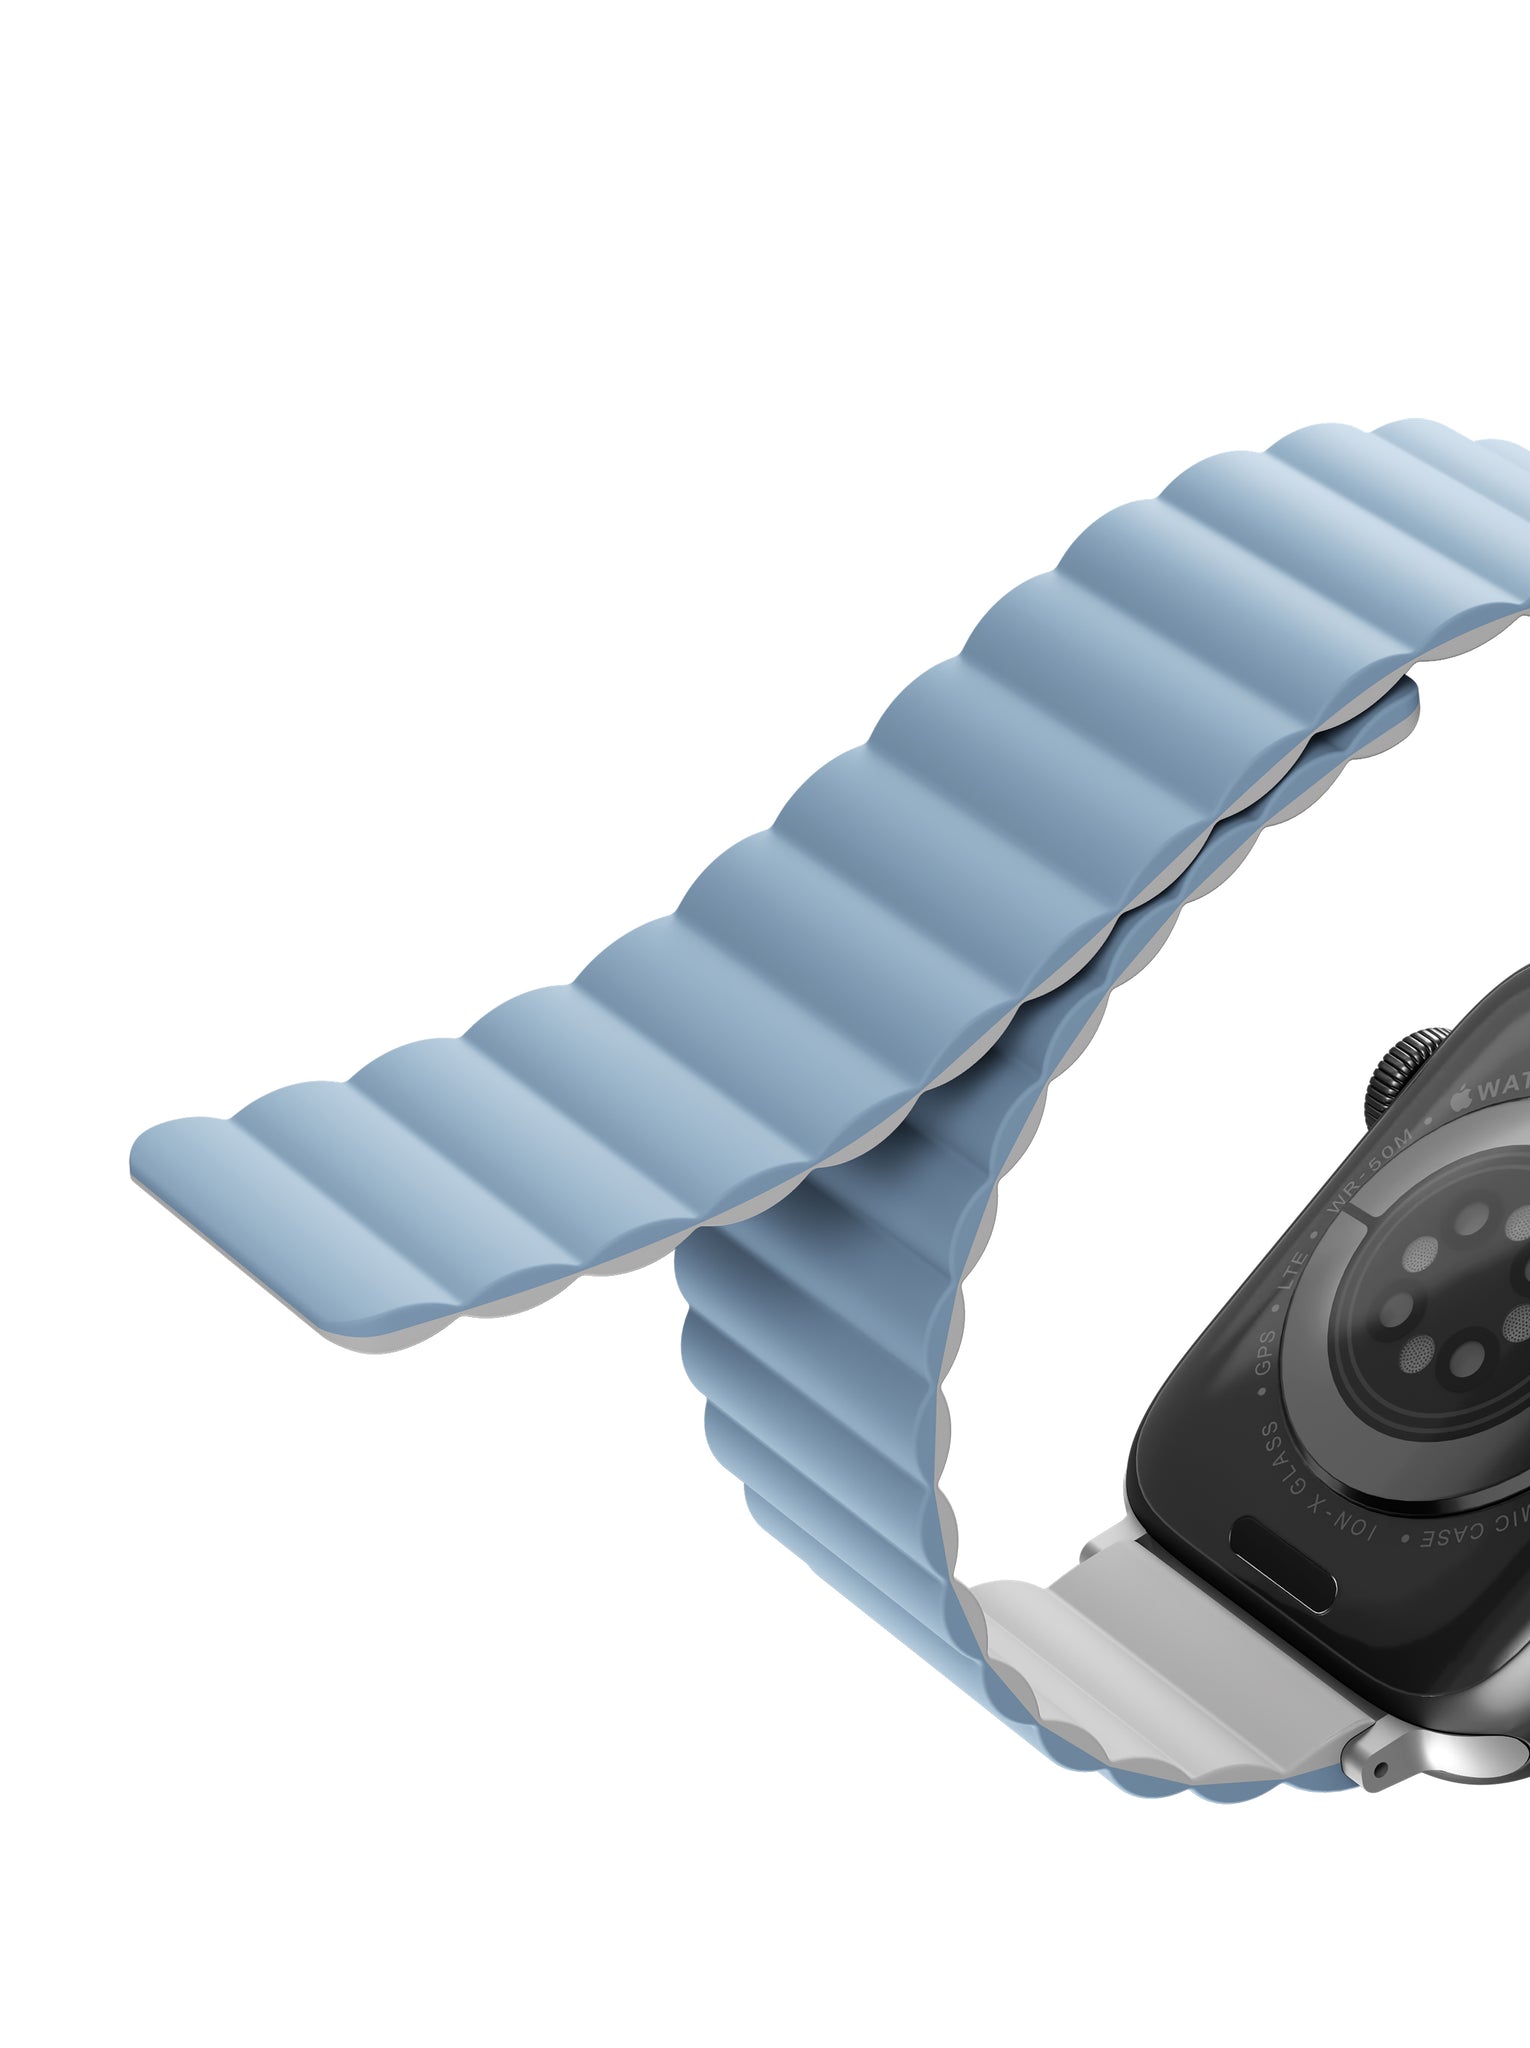 Uniq Revix Reversible Magnetic Apple watch strap 41/40/38MM - ARCTIC (WHITE/BLUE)